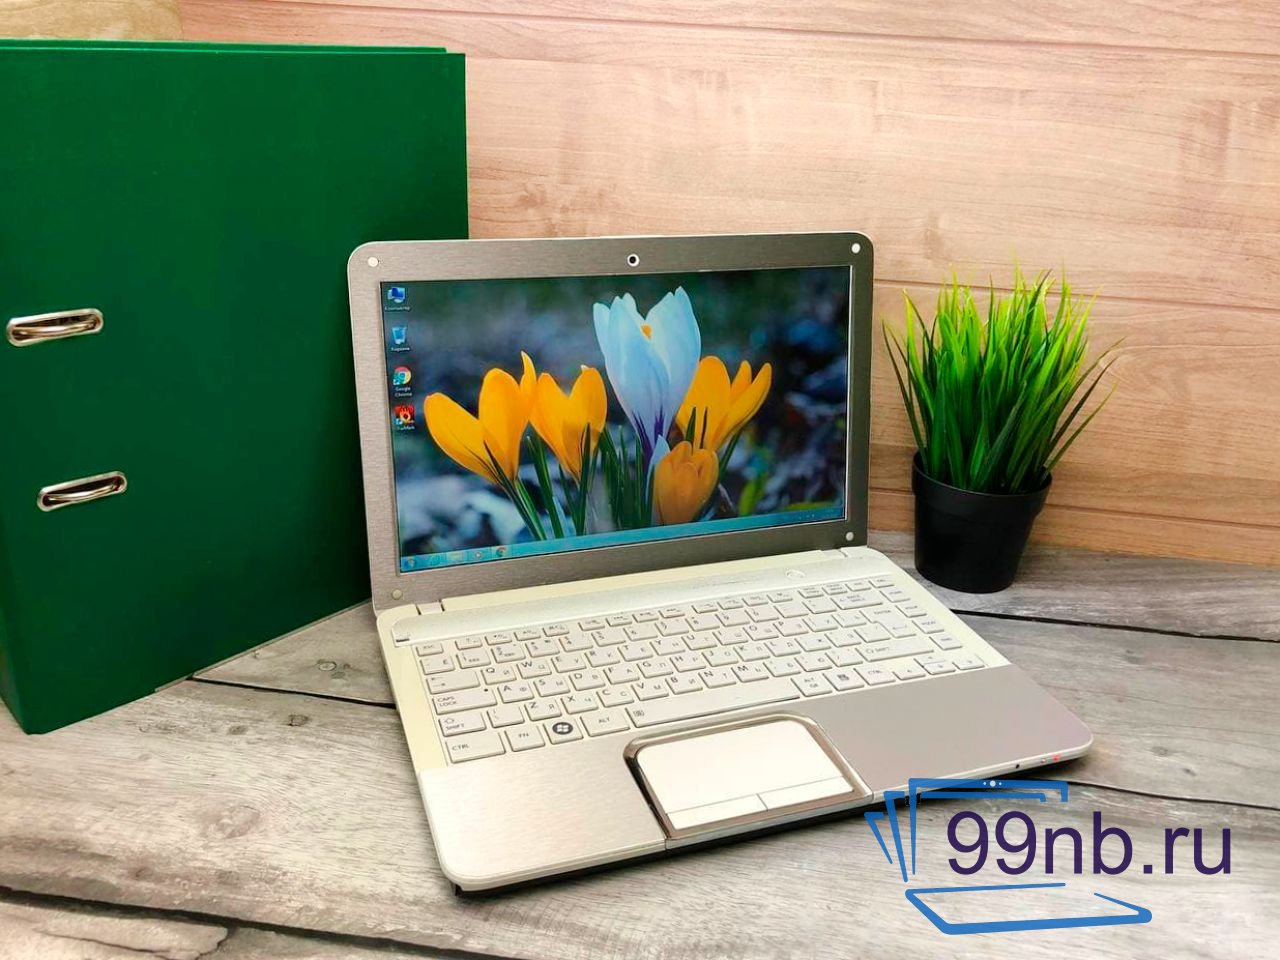  Белый ноутбук Toshiba для работы и учёбы